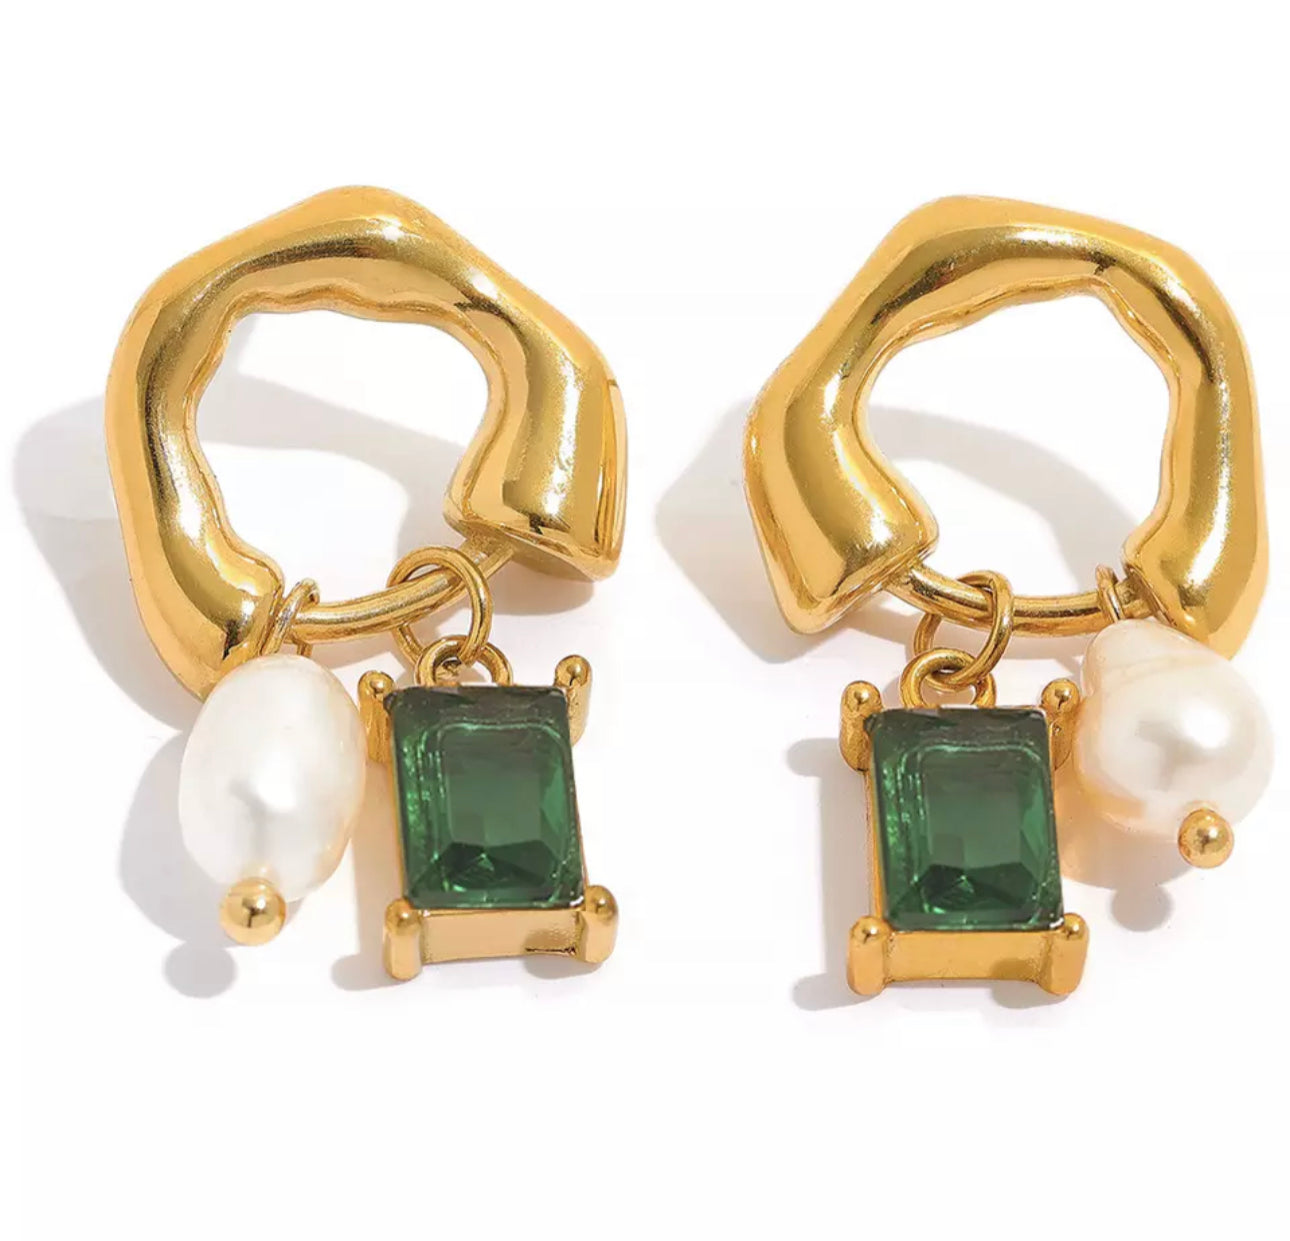 Erika Williner Designs - Florencia earrings